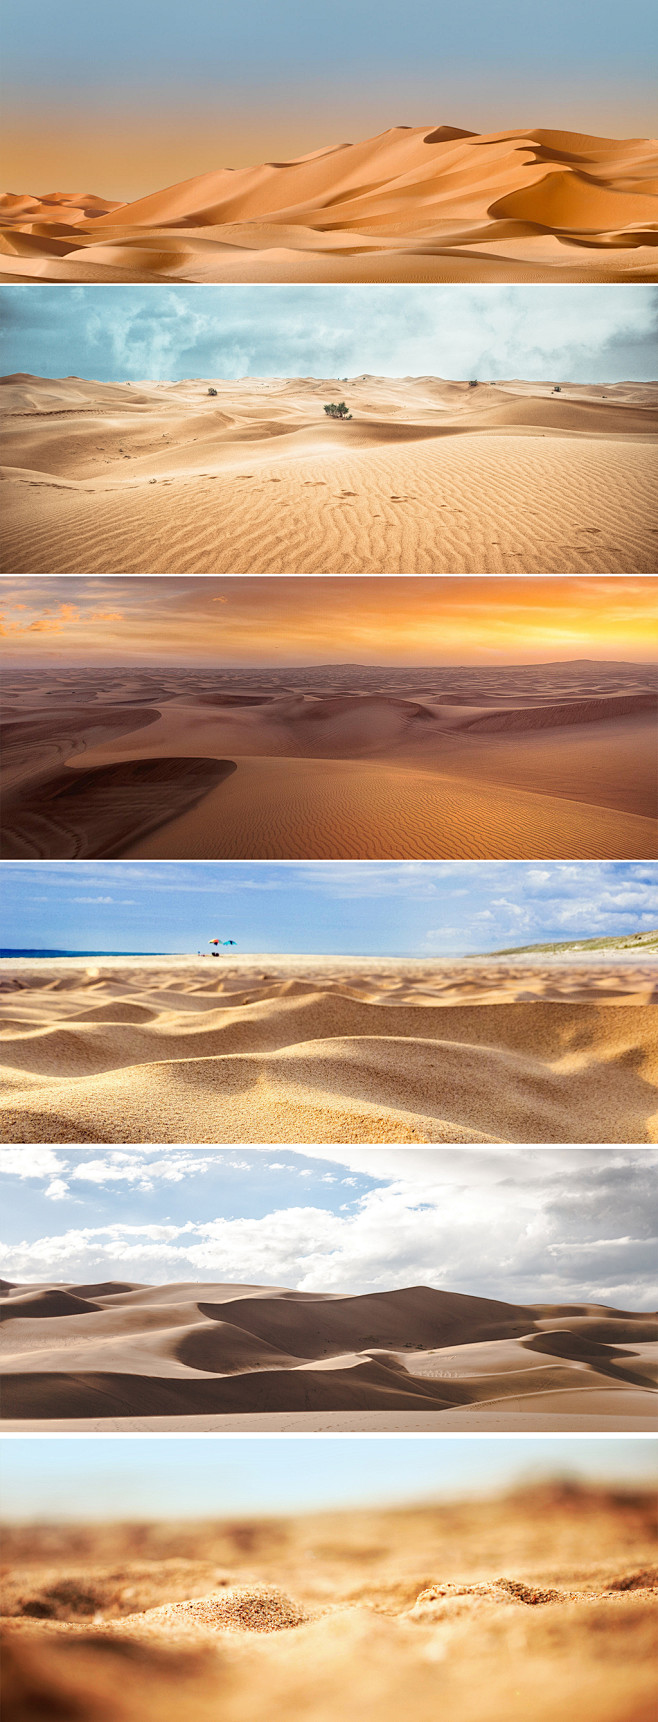 浩瀚无边沙漠蓝天无际沙漠沙子土壤背景图